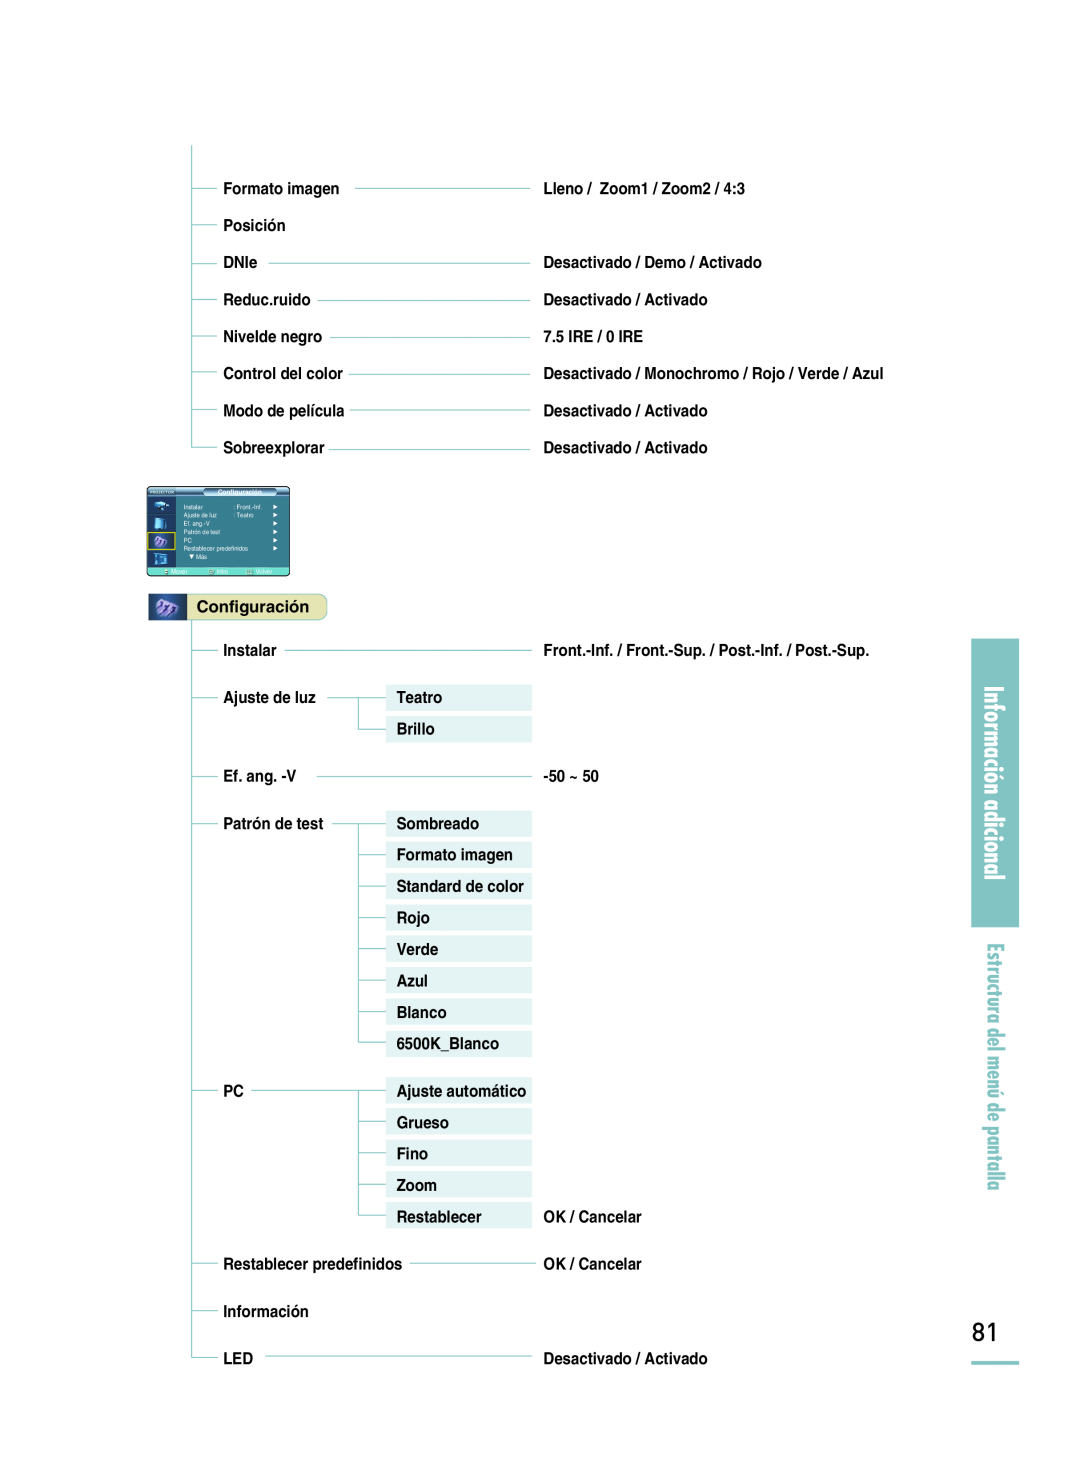 Samsung SPH800BEMX/EDC manual Información adicional Estructura del menú de pantalla, Other Information, Patrón de test 